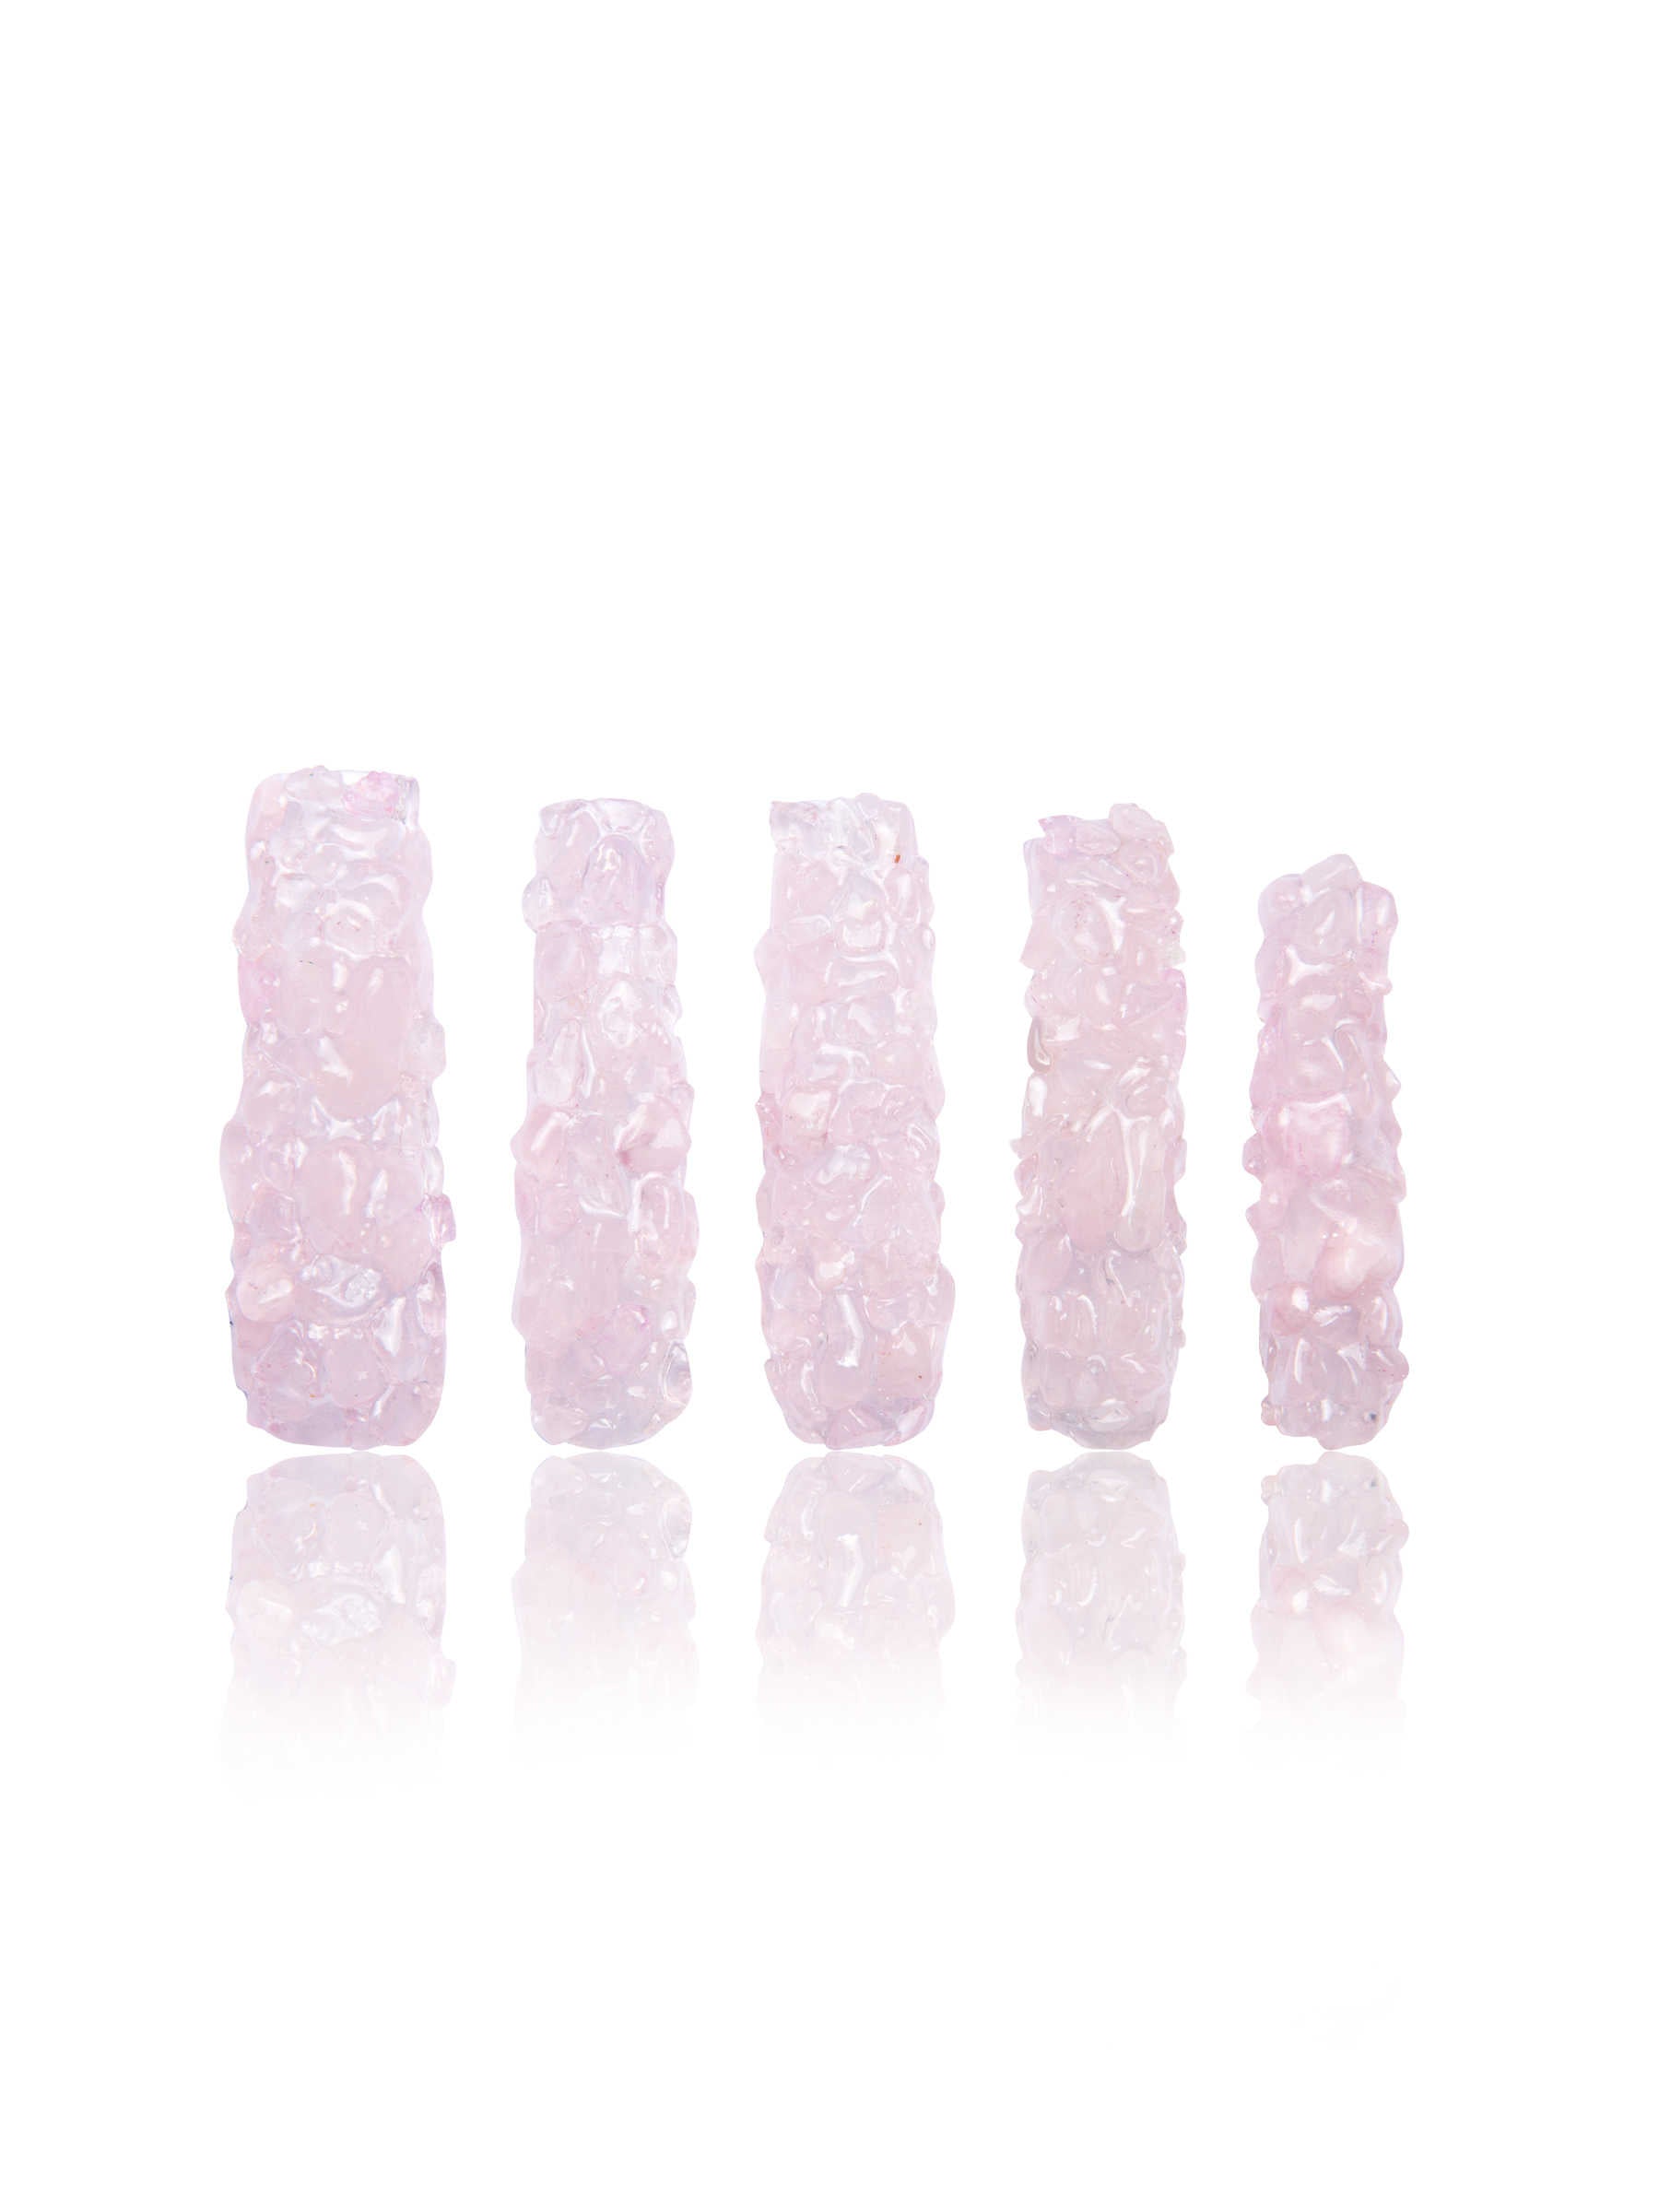 H180 - Rose quartz Crystal